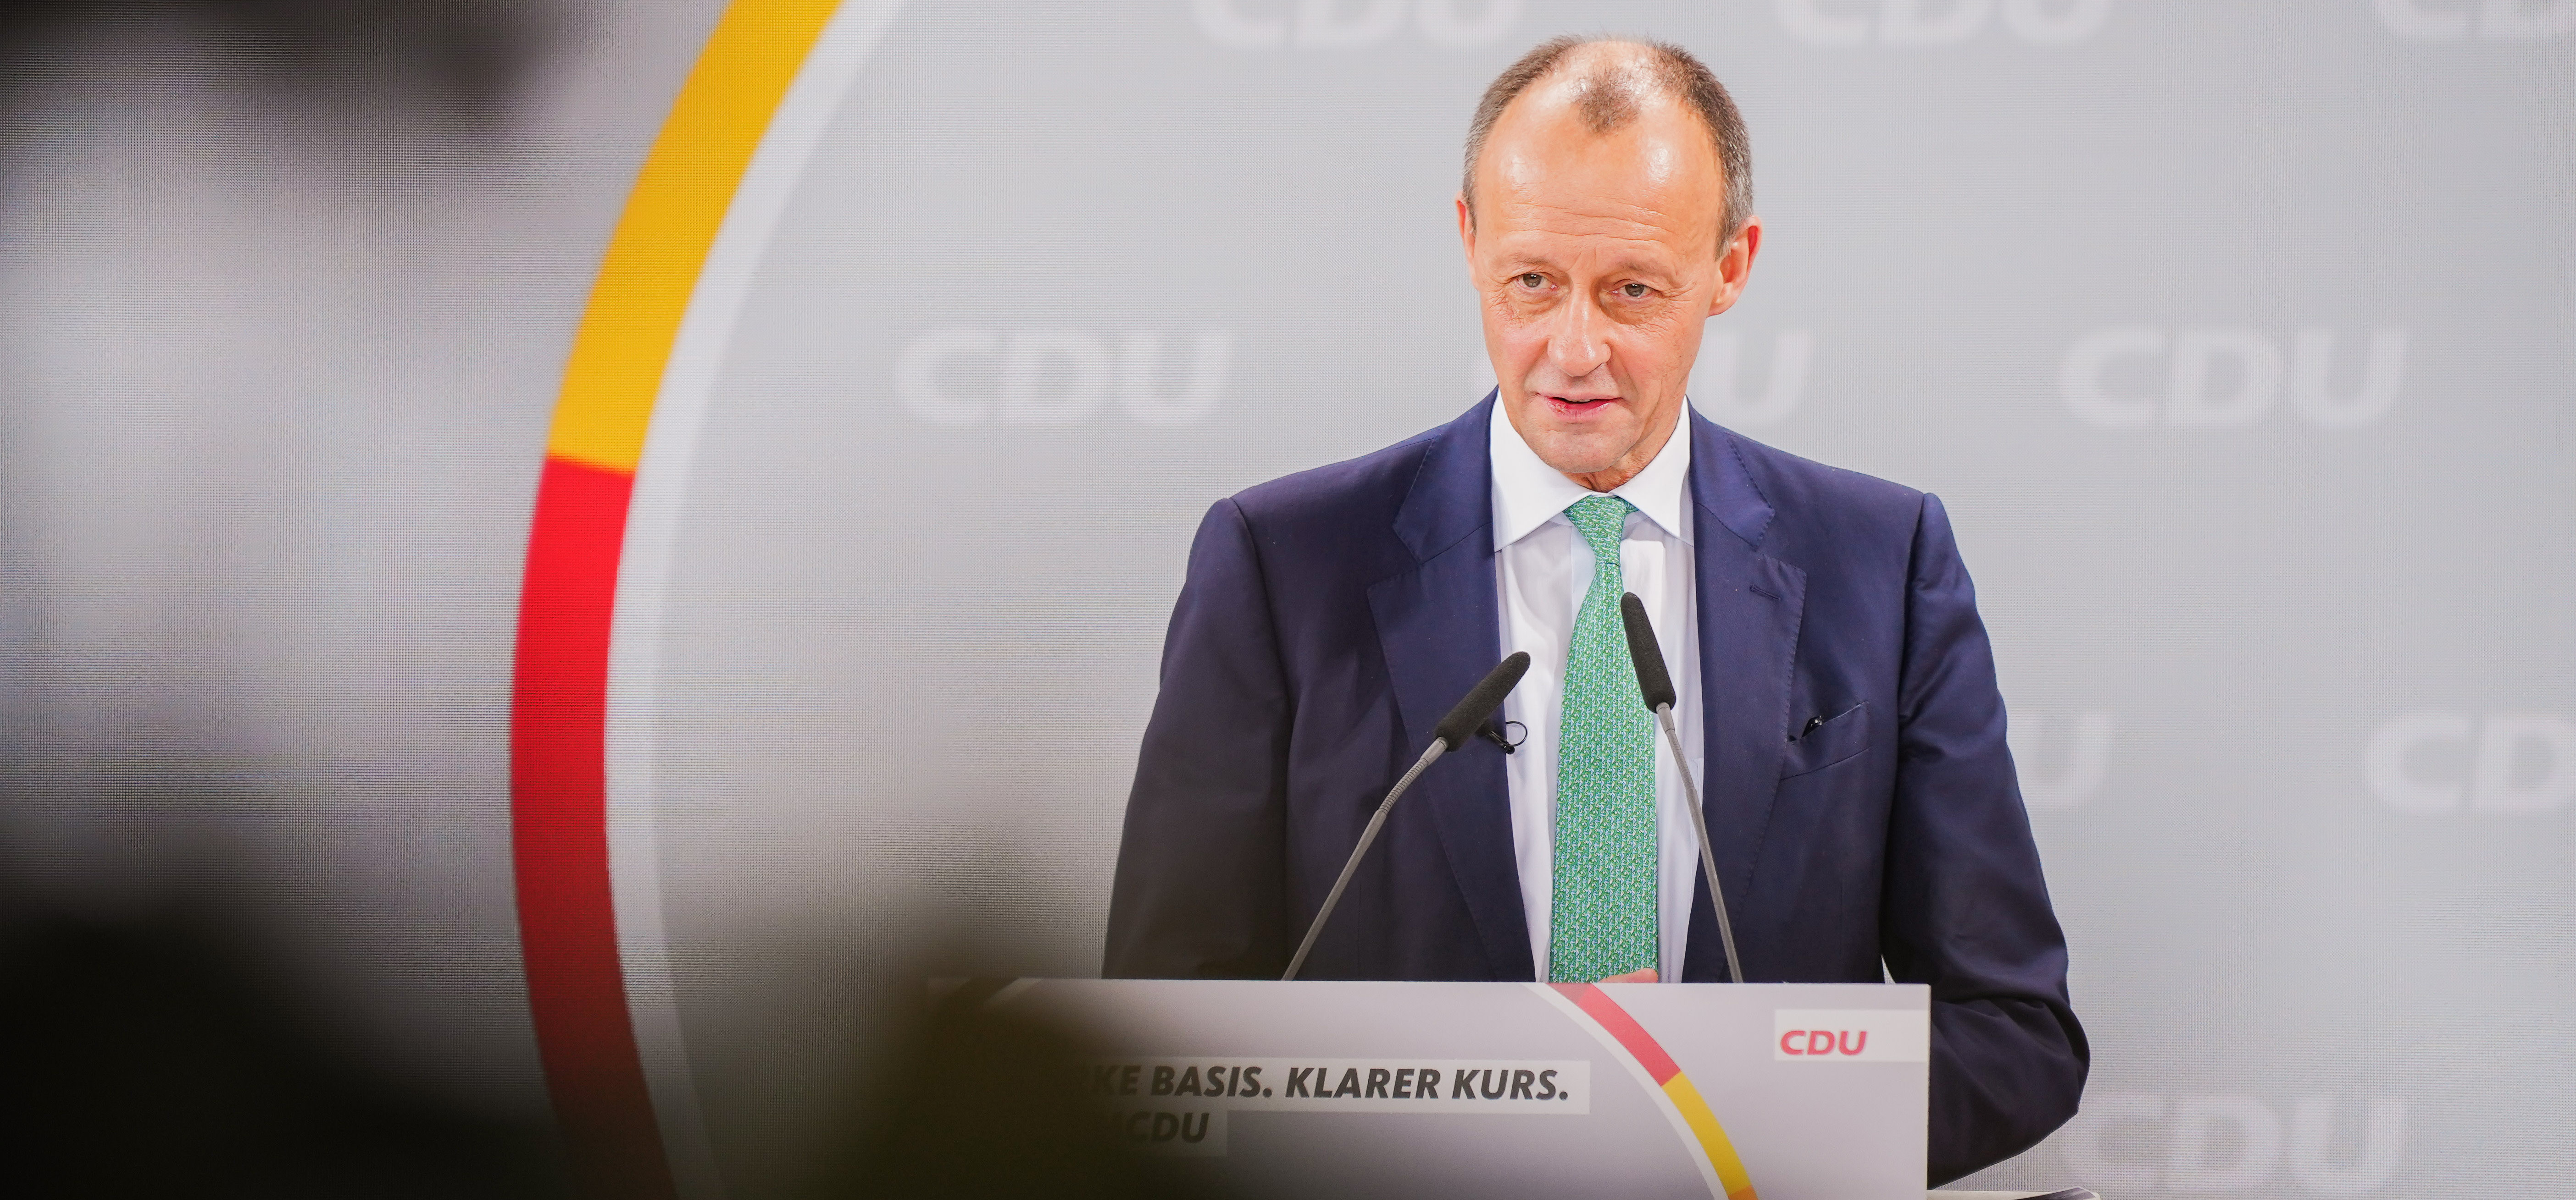 Foto: CDU/Steffen Böttcher